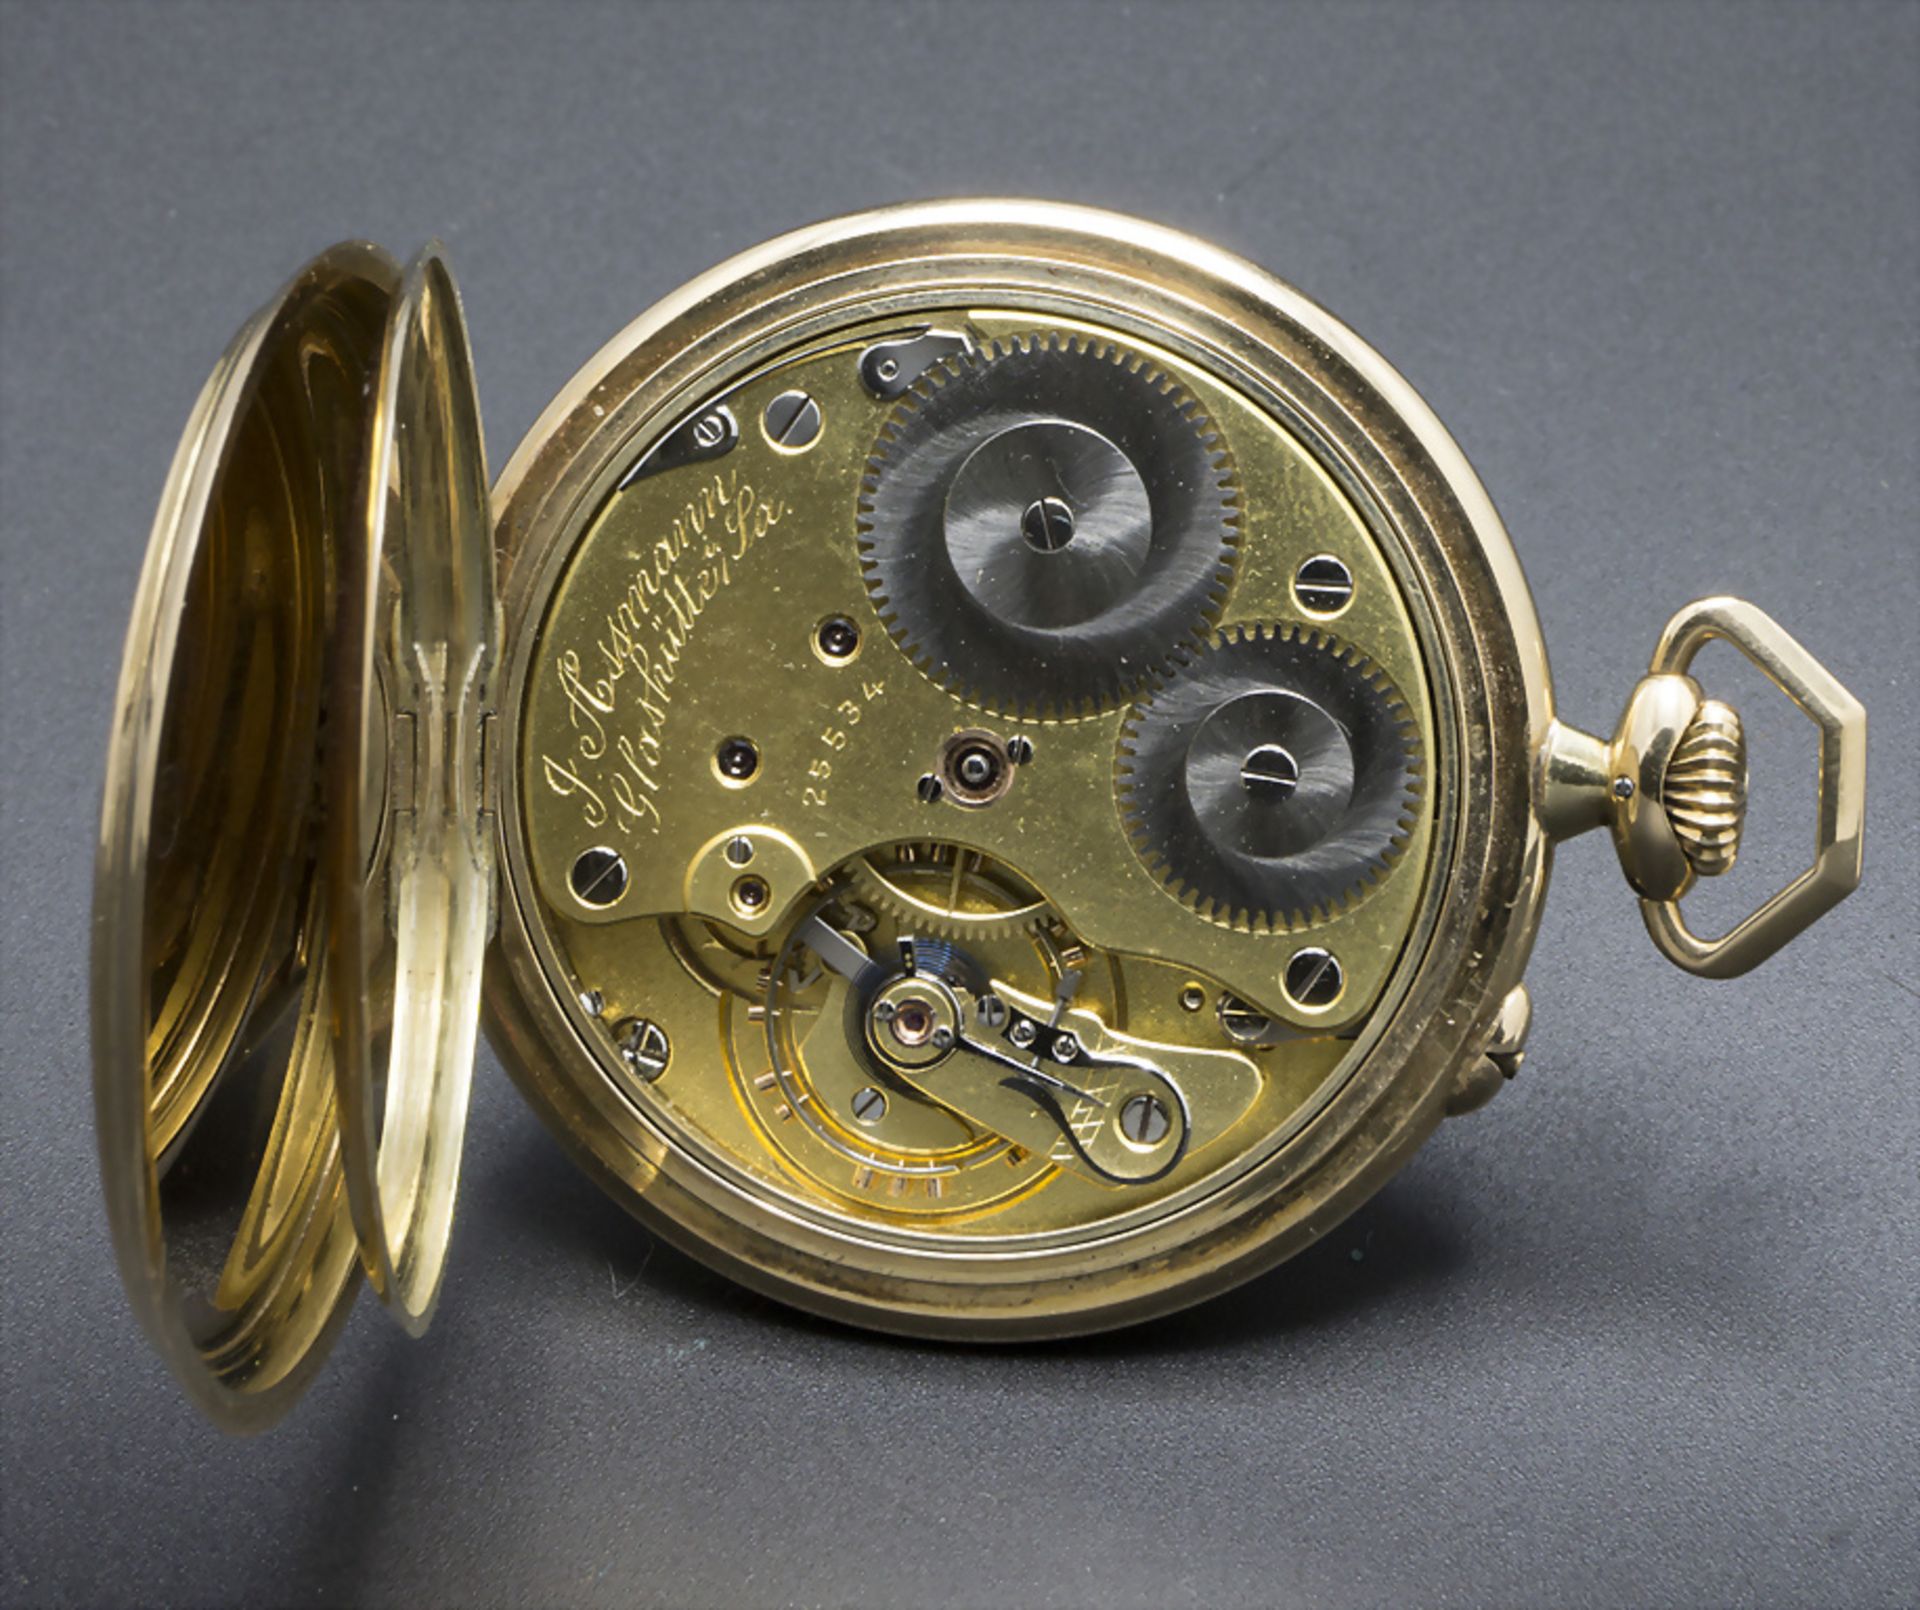 Offene Herrentaschenuhr / A 14k gold pocket watch, J. Assmann, Glashütte in Sachsen, um 1915 - Image 2 of 6